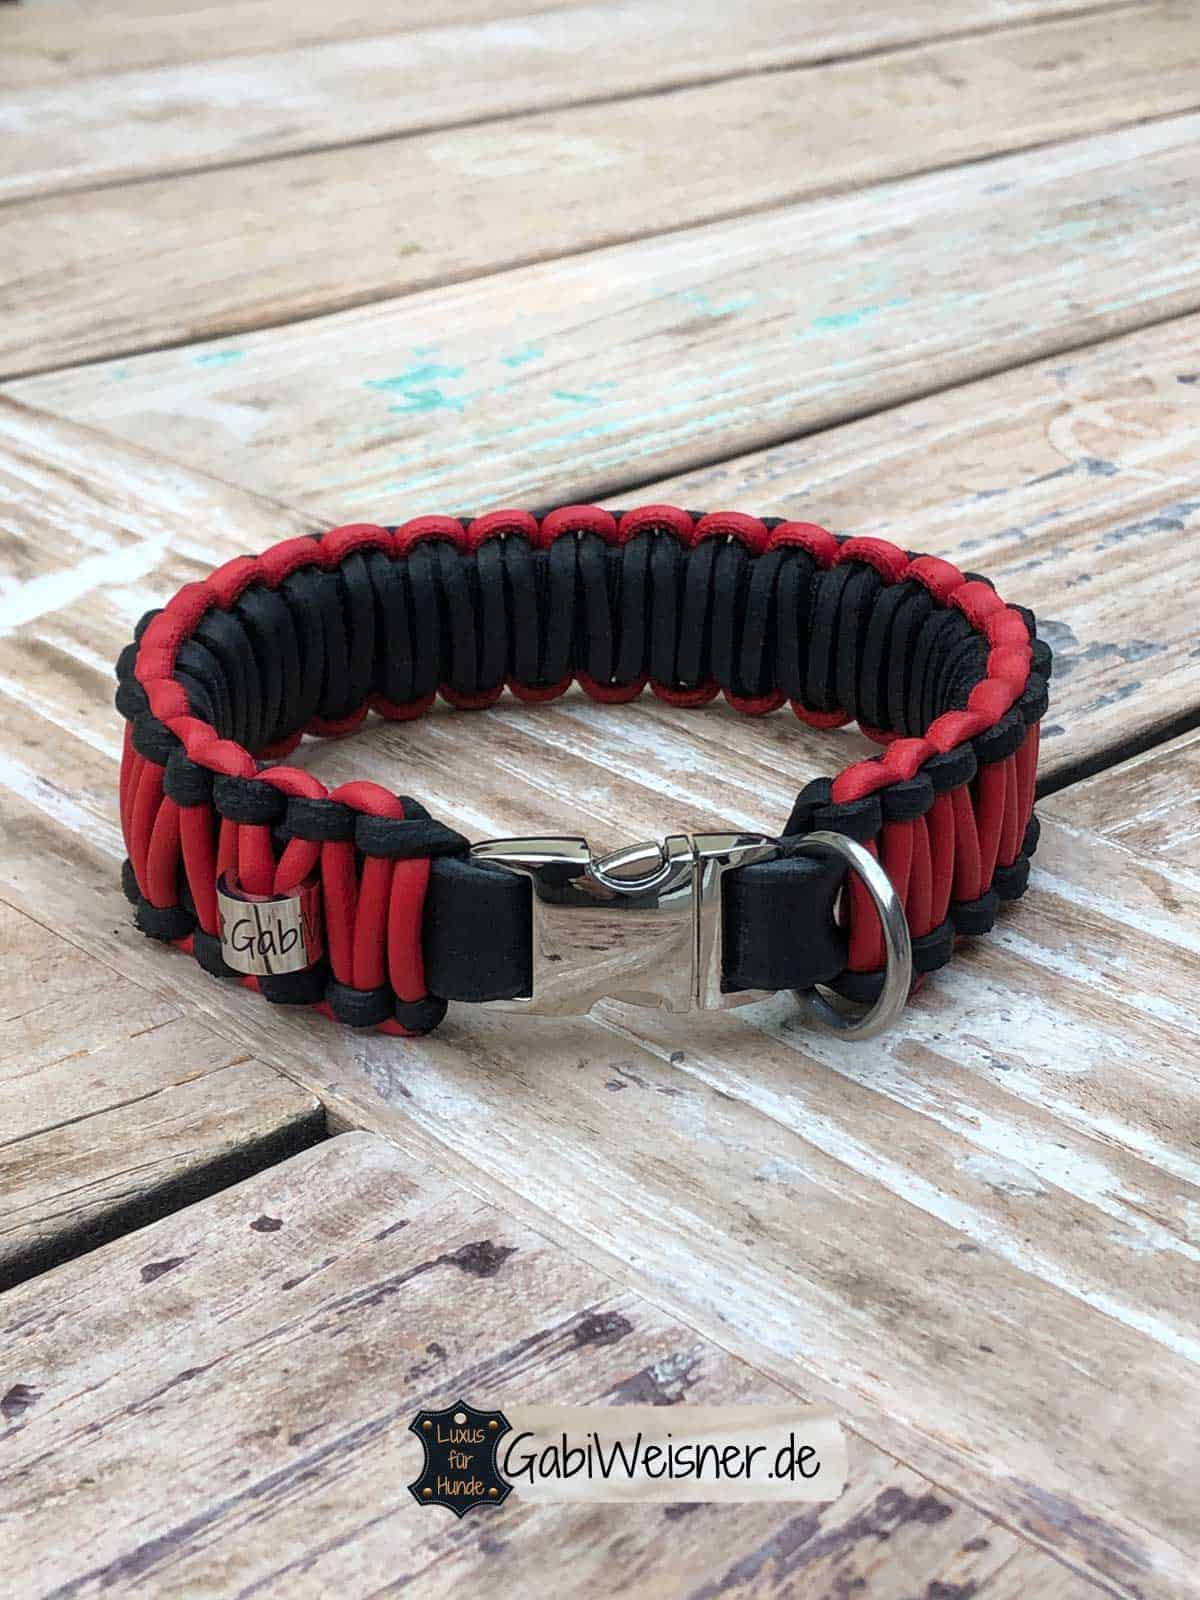 Joytale Welpenhalsband,Hundehalsband für Kleine Hund,Reflektierend Halsband Hund Gepolstert Hundehalsband Breit Rot